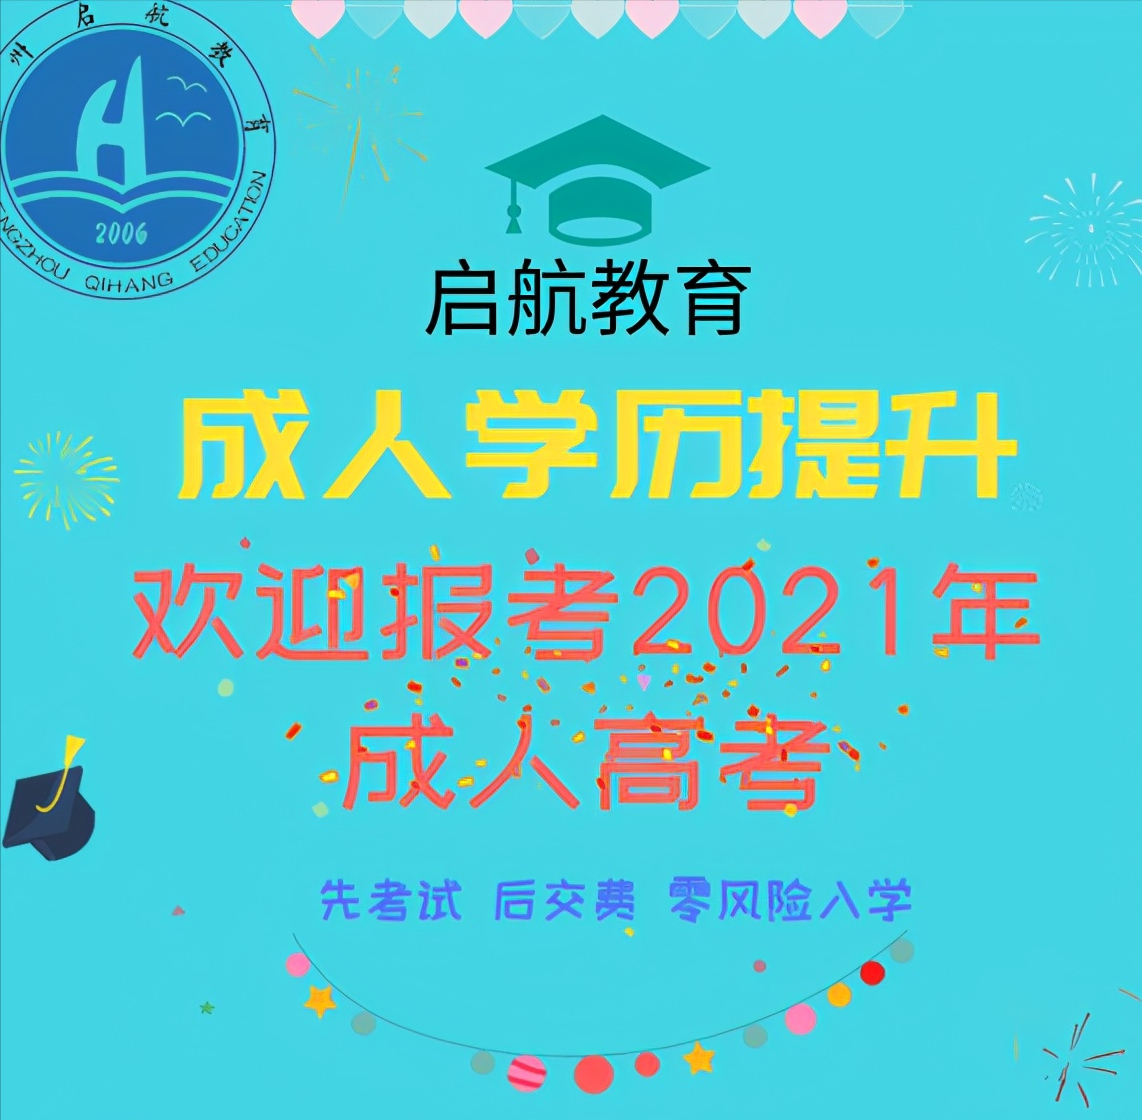 2021年成人高考「华北水利水电大学」招生简章